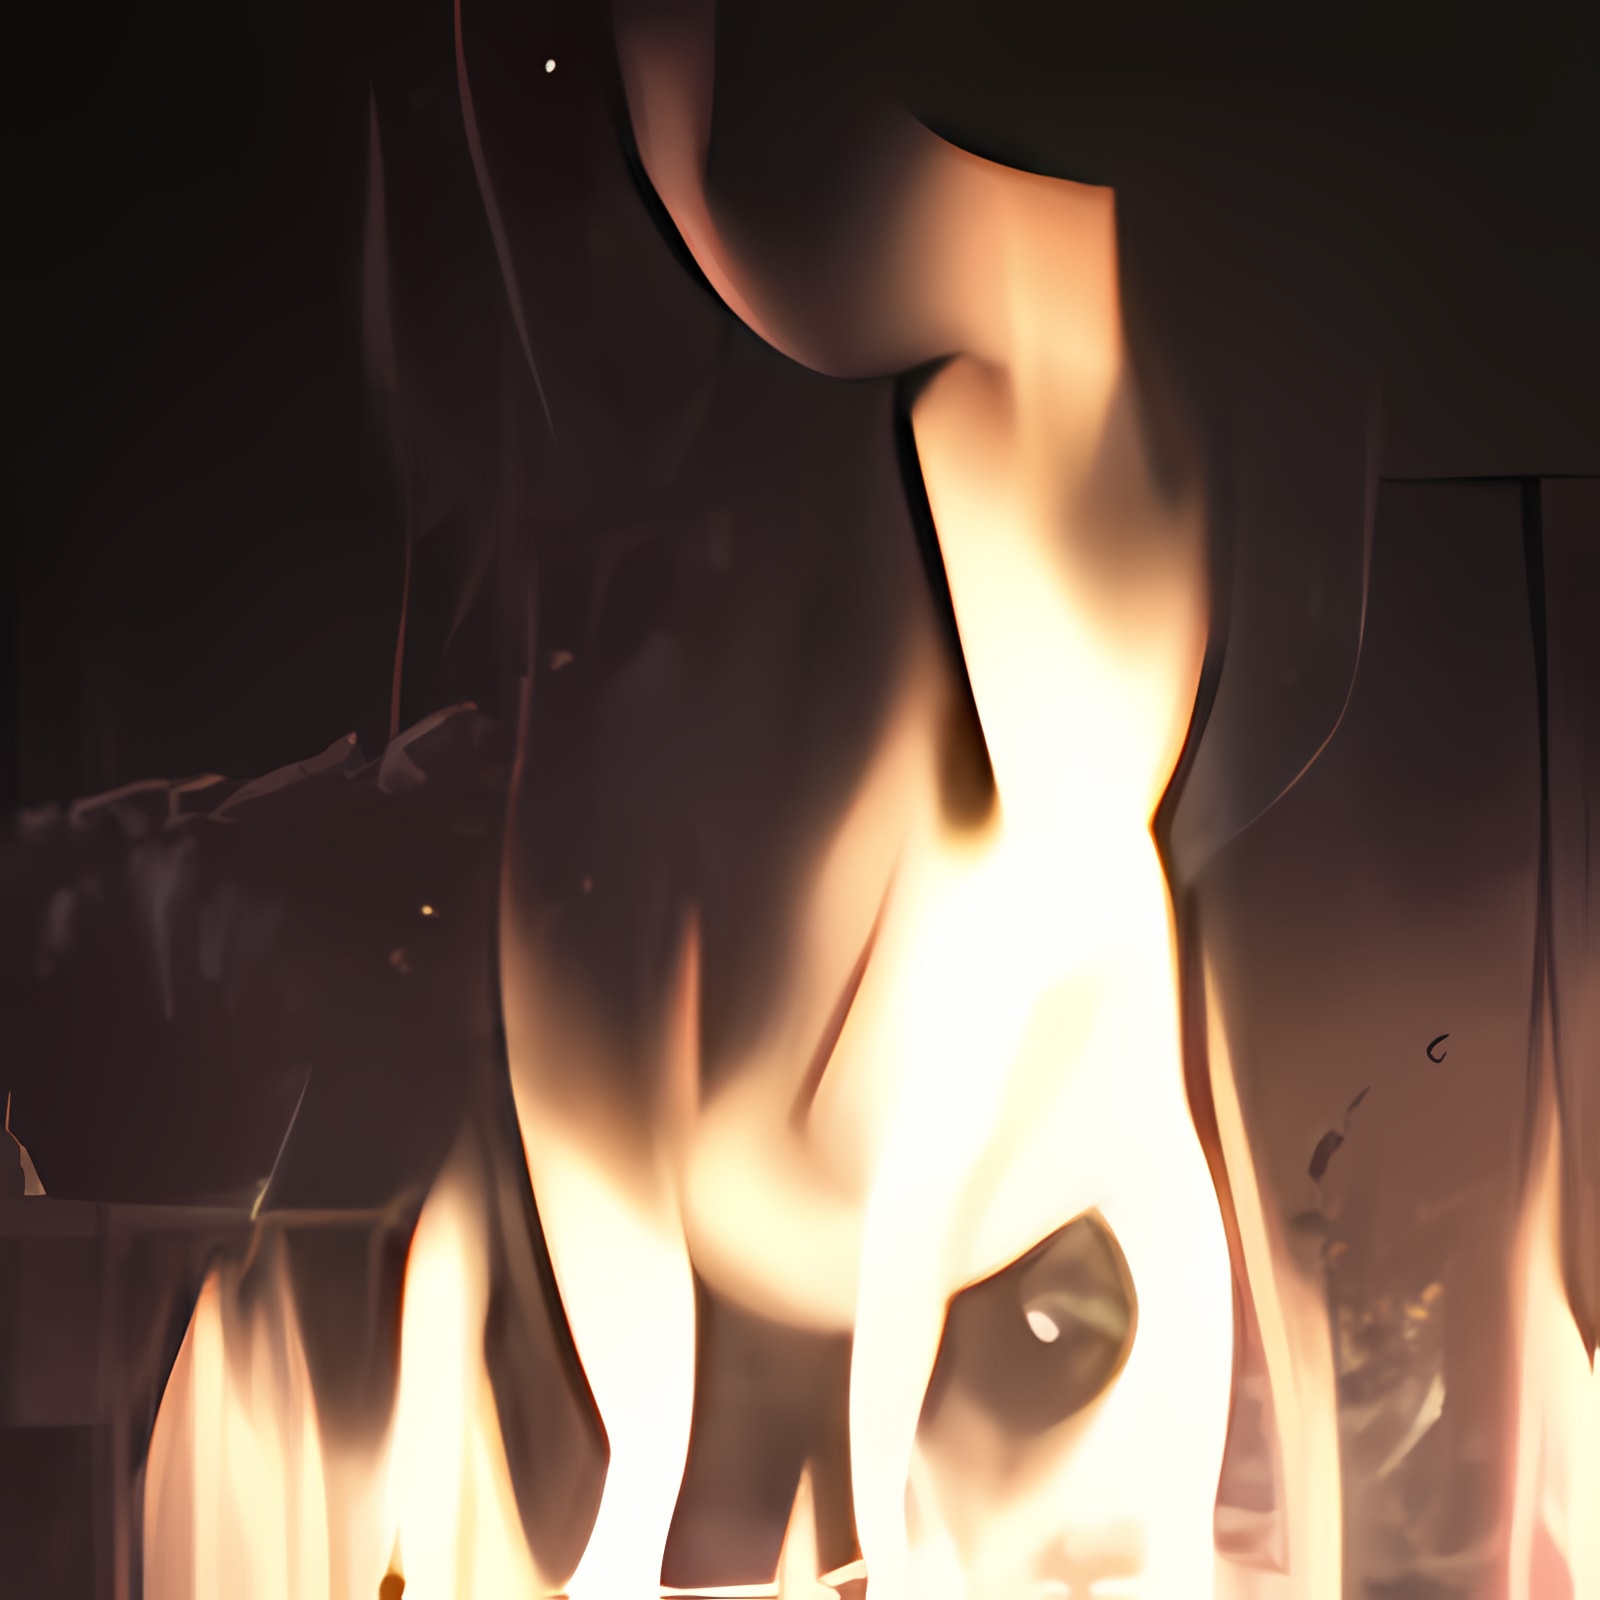 Herunterladen Fireplace Installieren Sie Neueste App Downloader